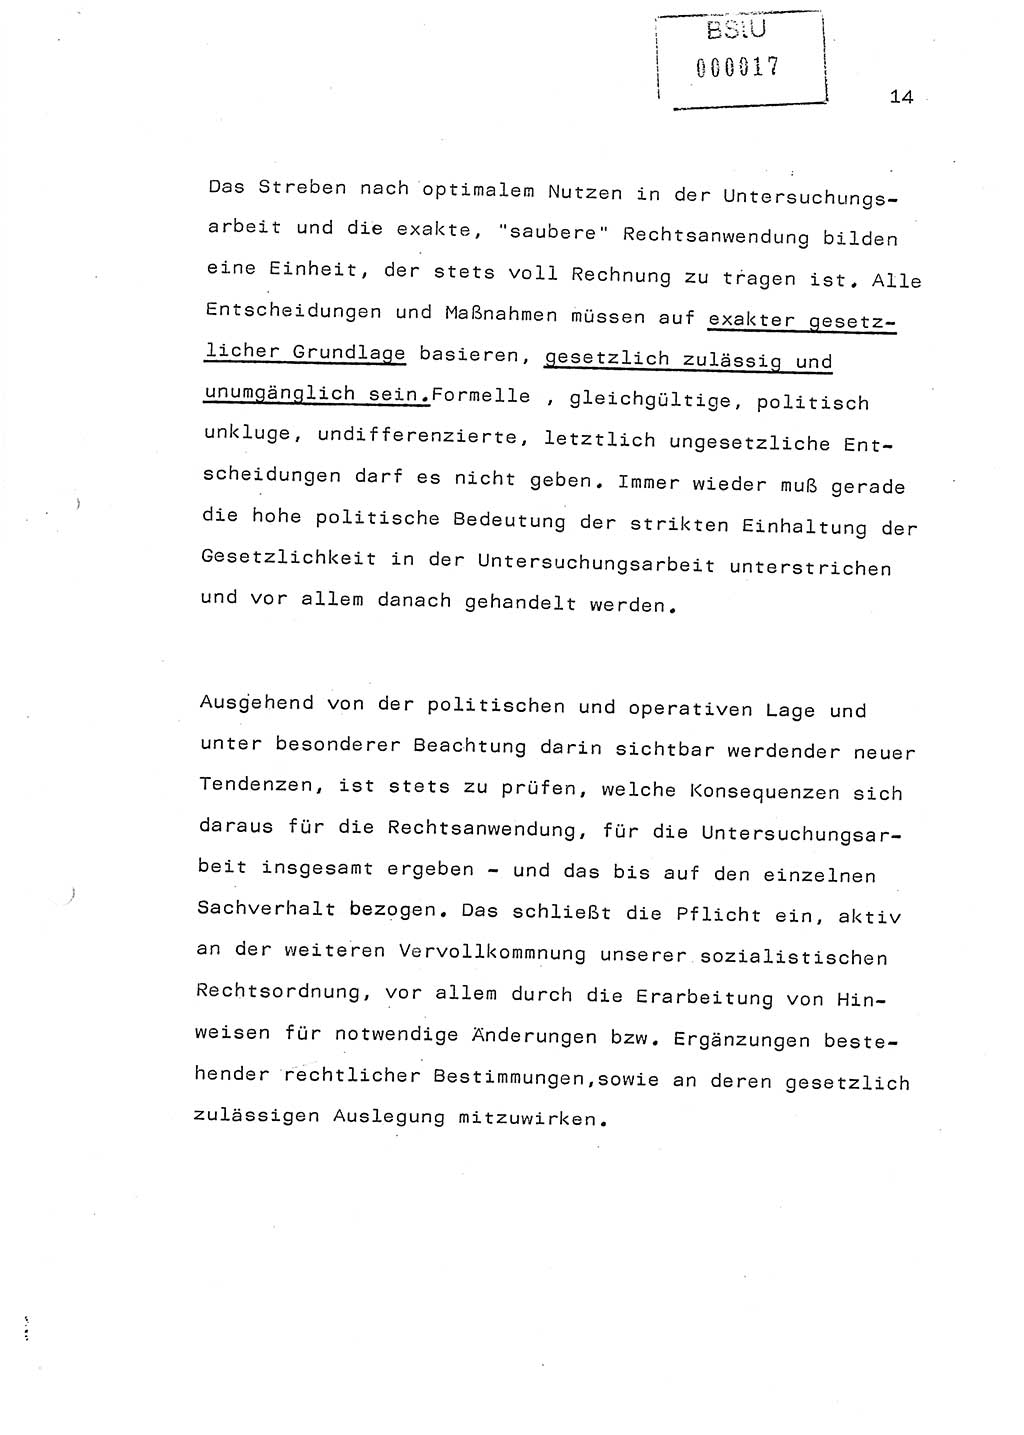 Referat (Generaloberst Erich Mielke) auf der Zentralen Dienstkonferenz am 24.5.1979 [Ministerium für Staatssicherheit (MfS), Deutsche Demokratische Republik (DDR), Der Minister], Berlin 1979, Seite 14 (Ref. DK DDR MfS Min. /79 1979, S. 14)